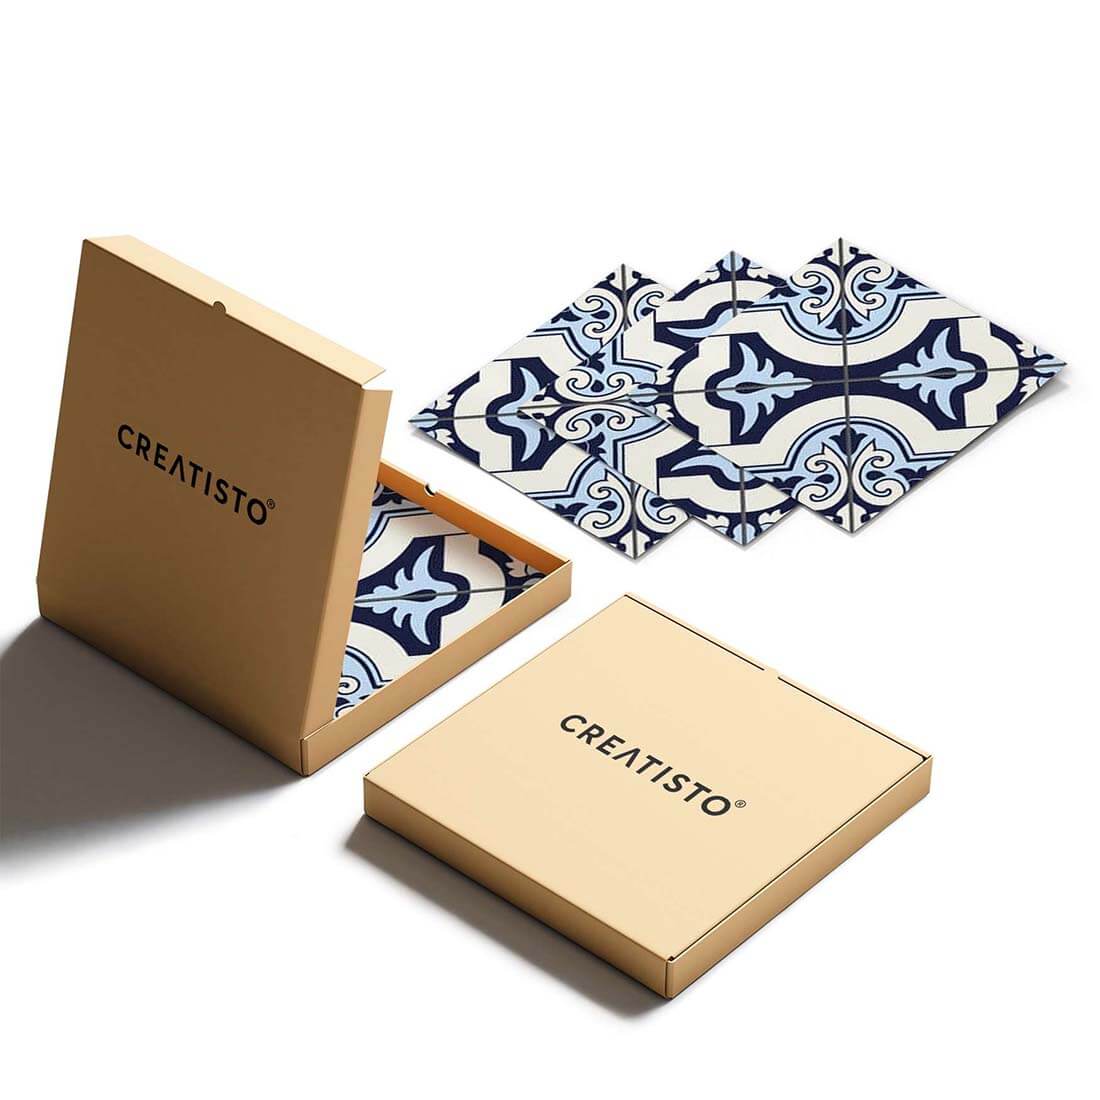 Klebefliesen Azulejo Cross - Verpackung - creatisto pds2